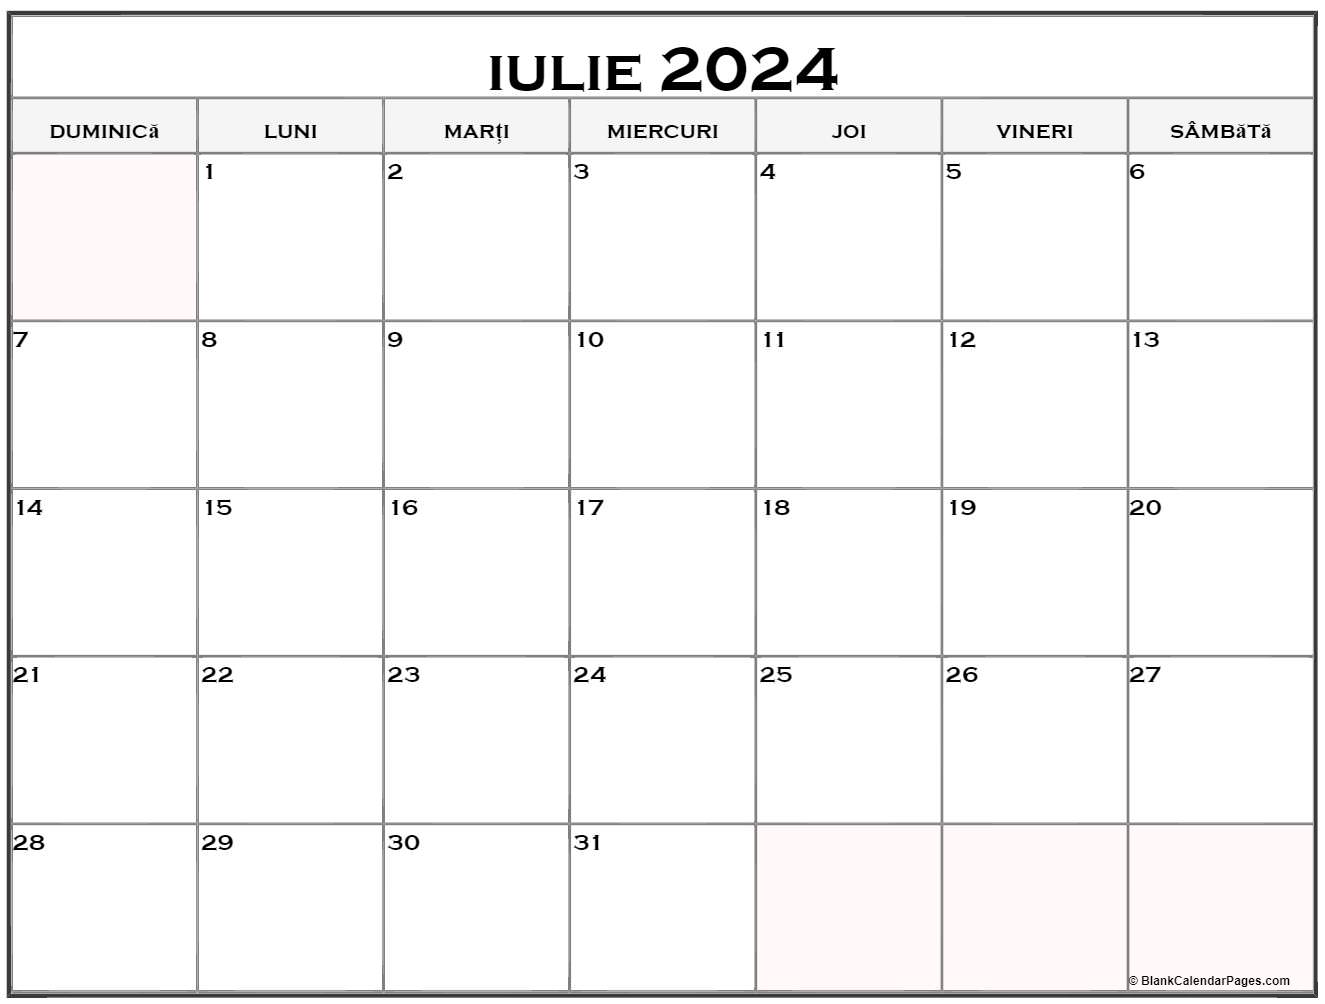 Calendarul iulie 2024 imprimabil gratuit in romana